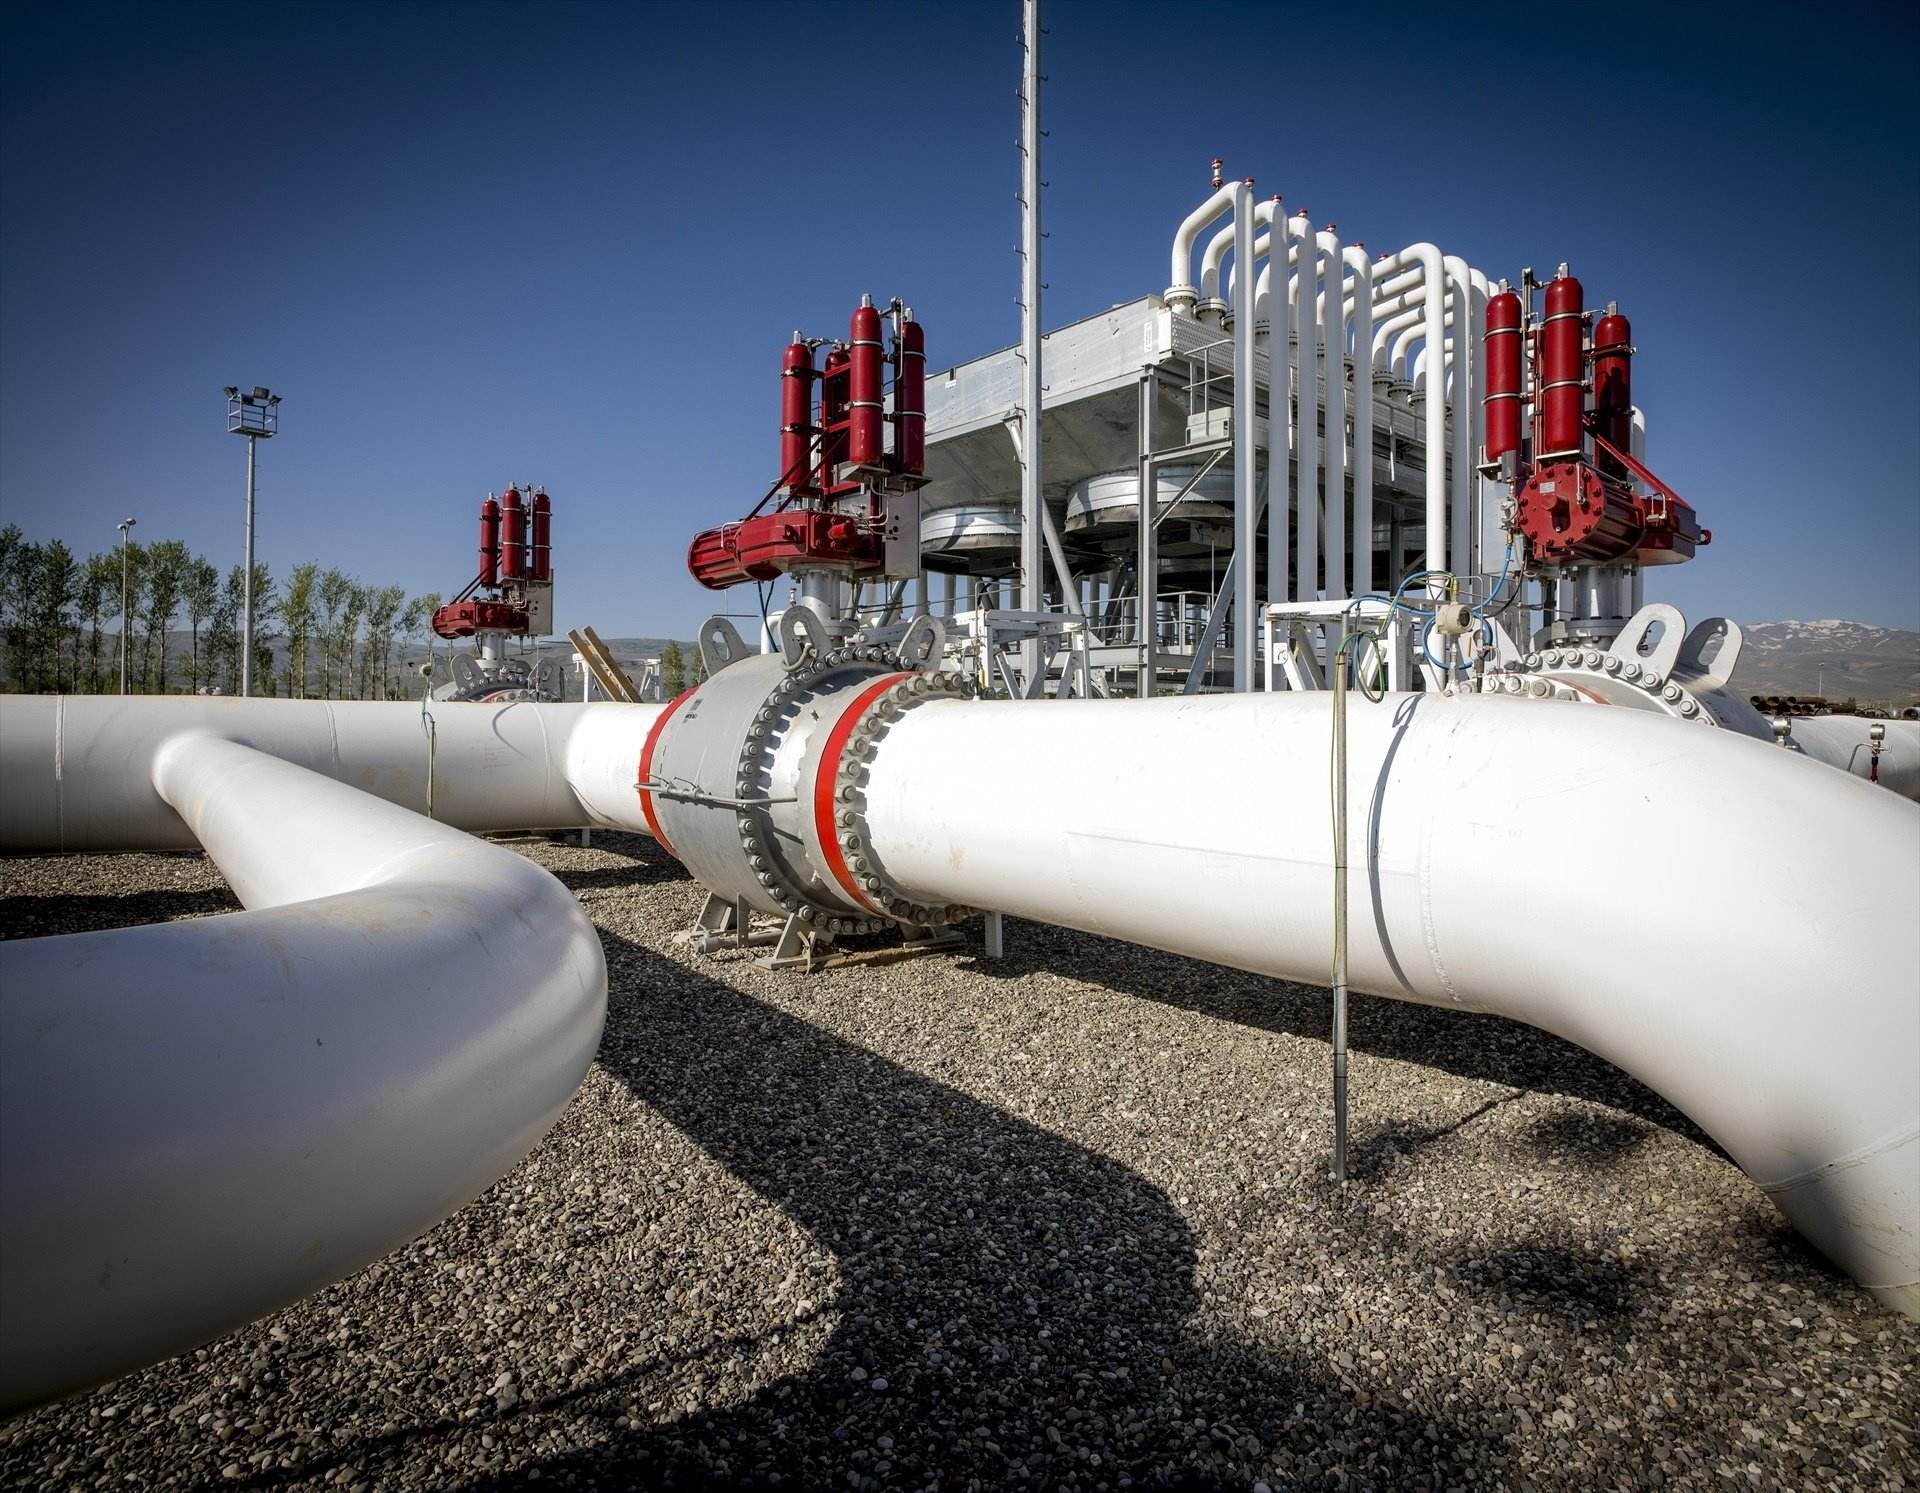 Técnicas Reunidas guanya un contracte de 3.280 milions als Emirats Àrabs per ampliar la planta gasista